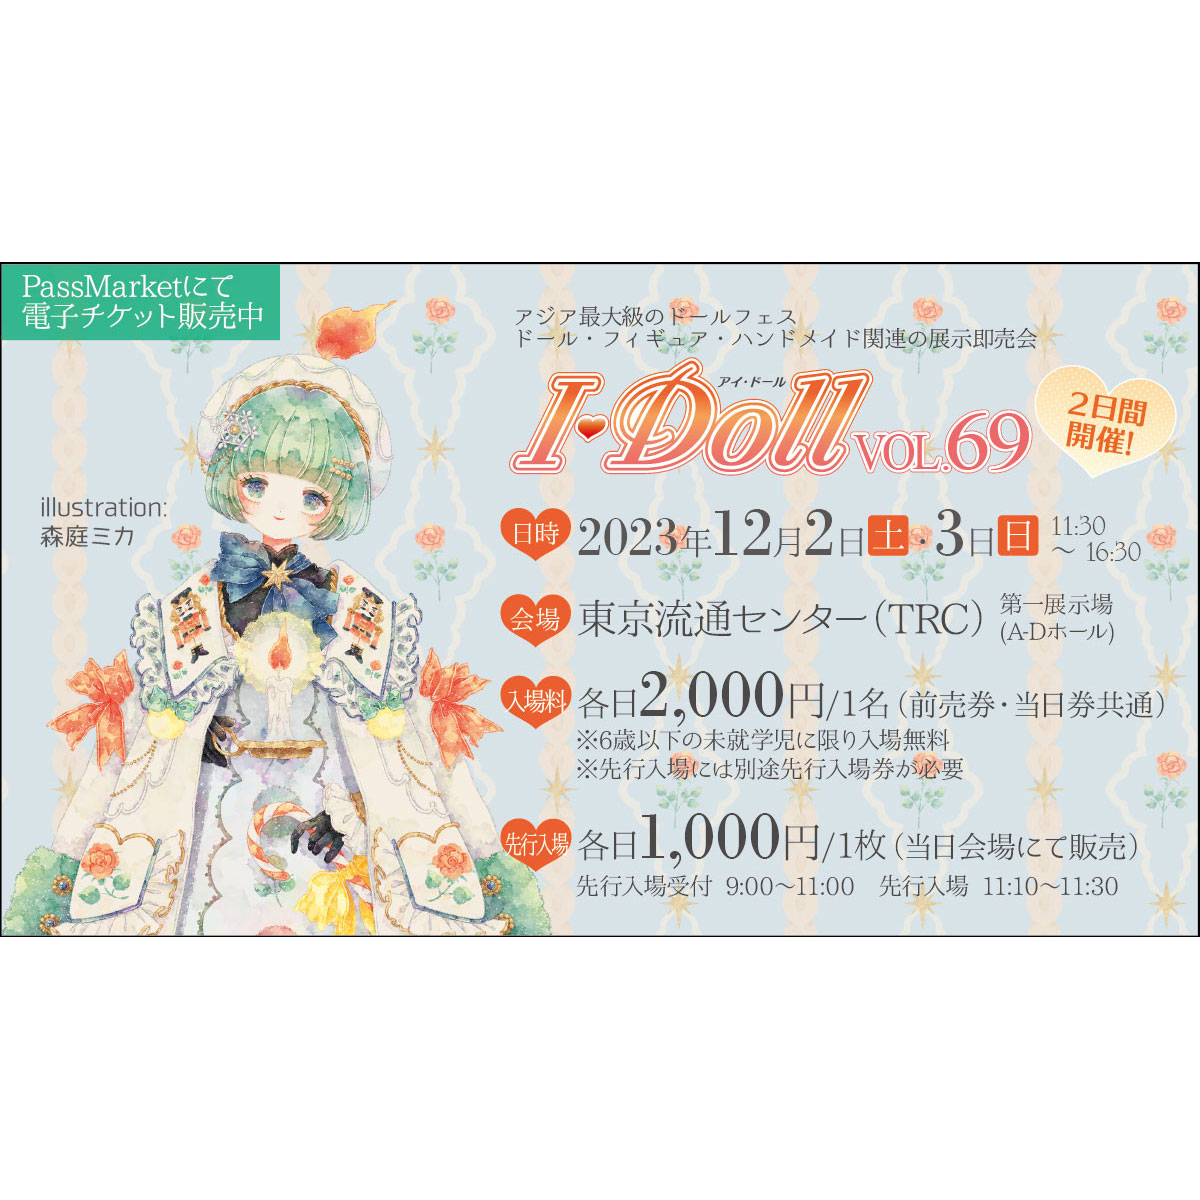 Tokyo I・Doll VOL.67